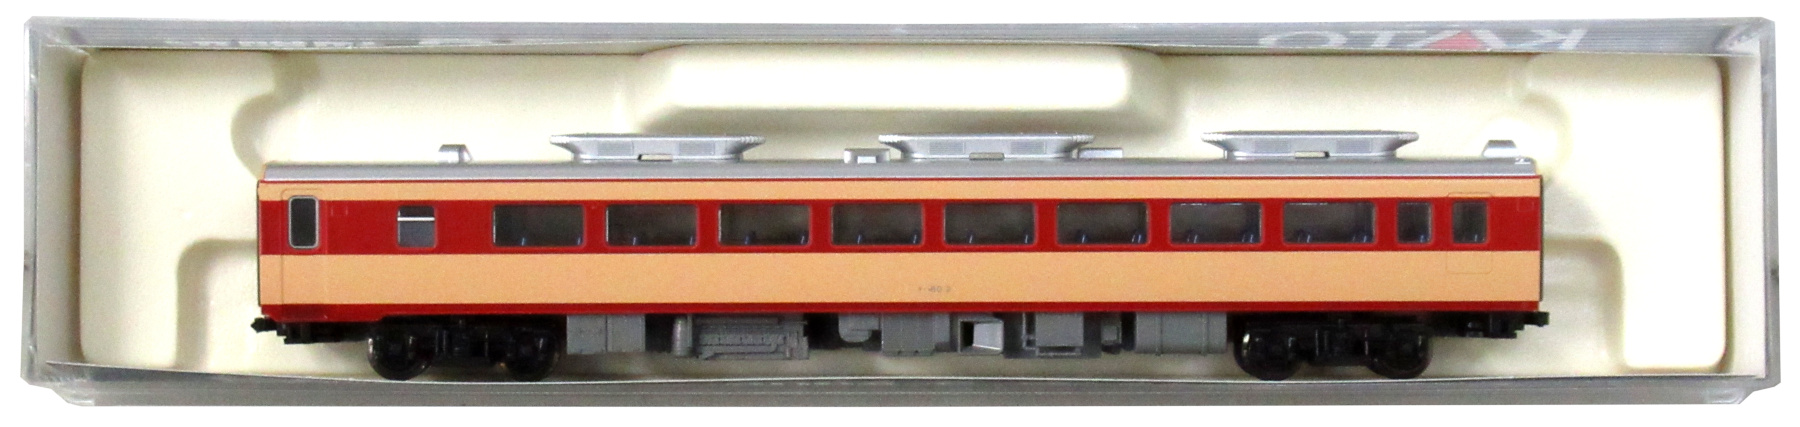 6064-2 キハ80 初期形